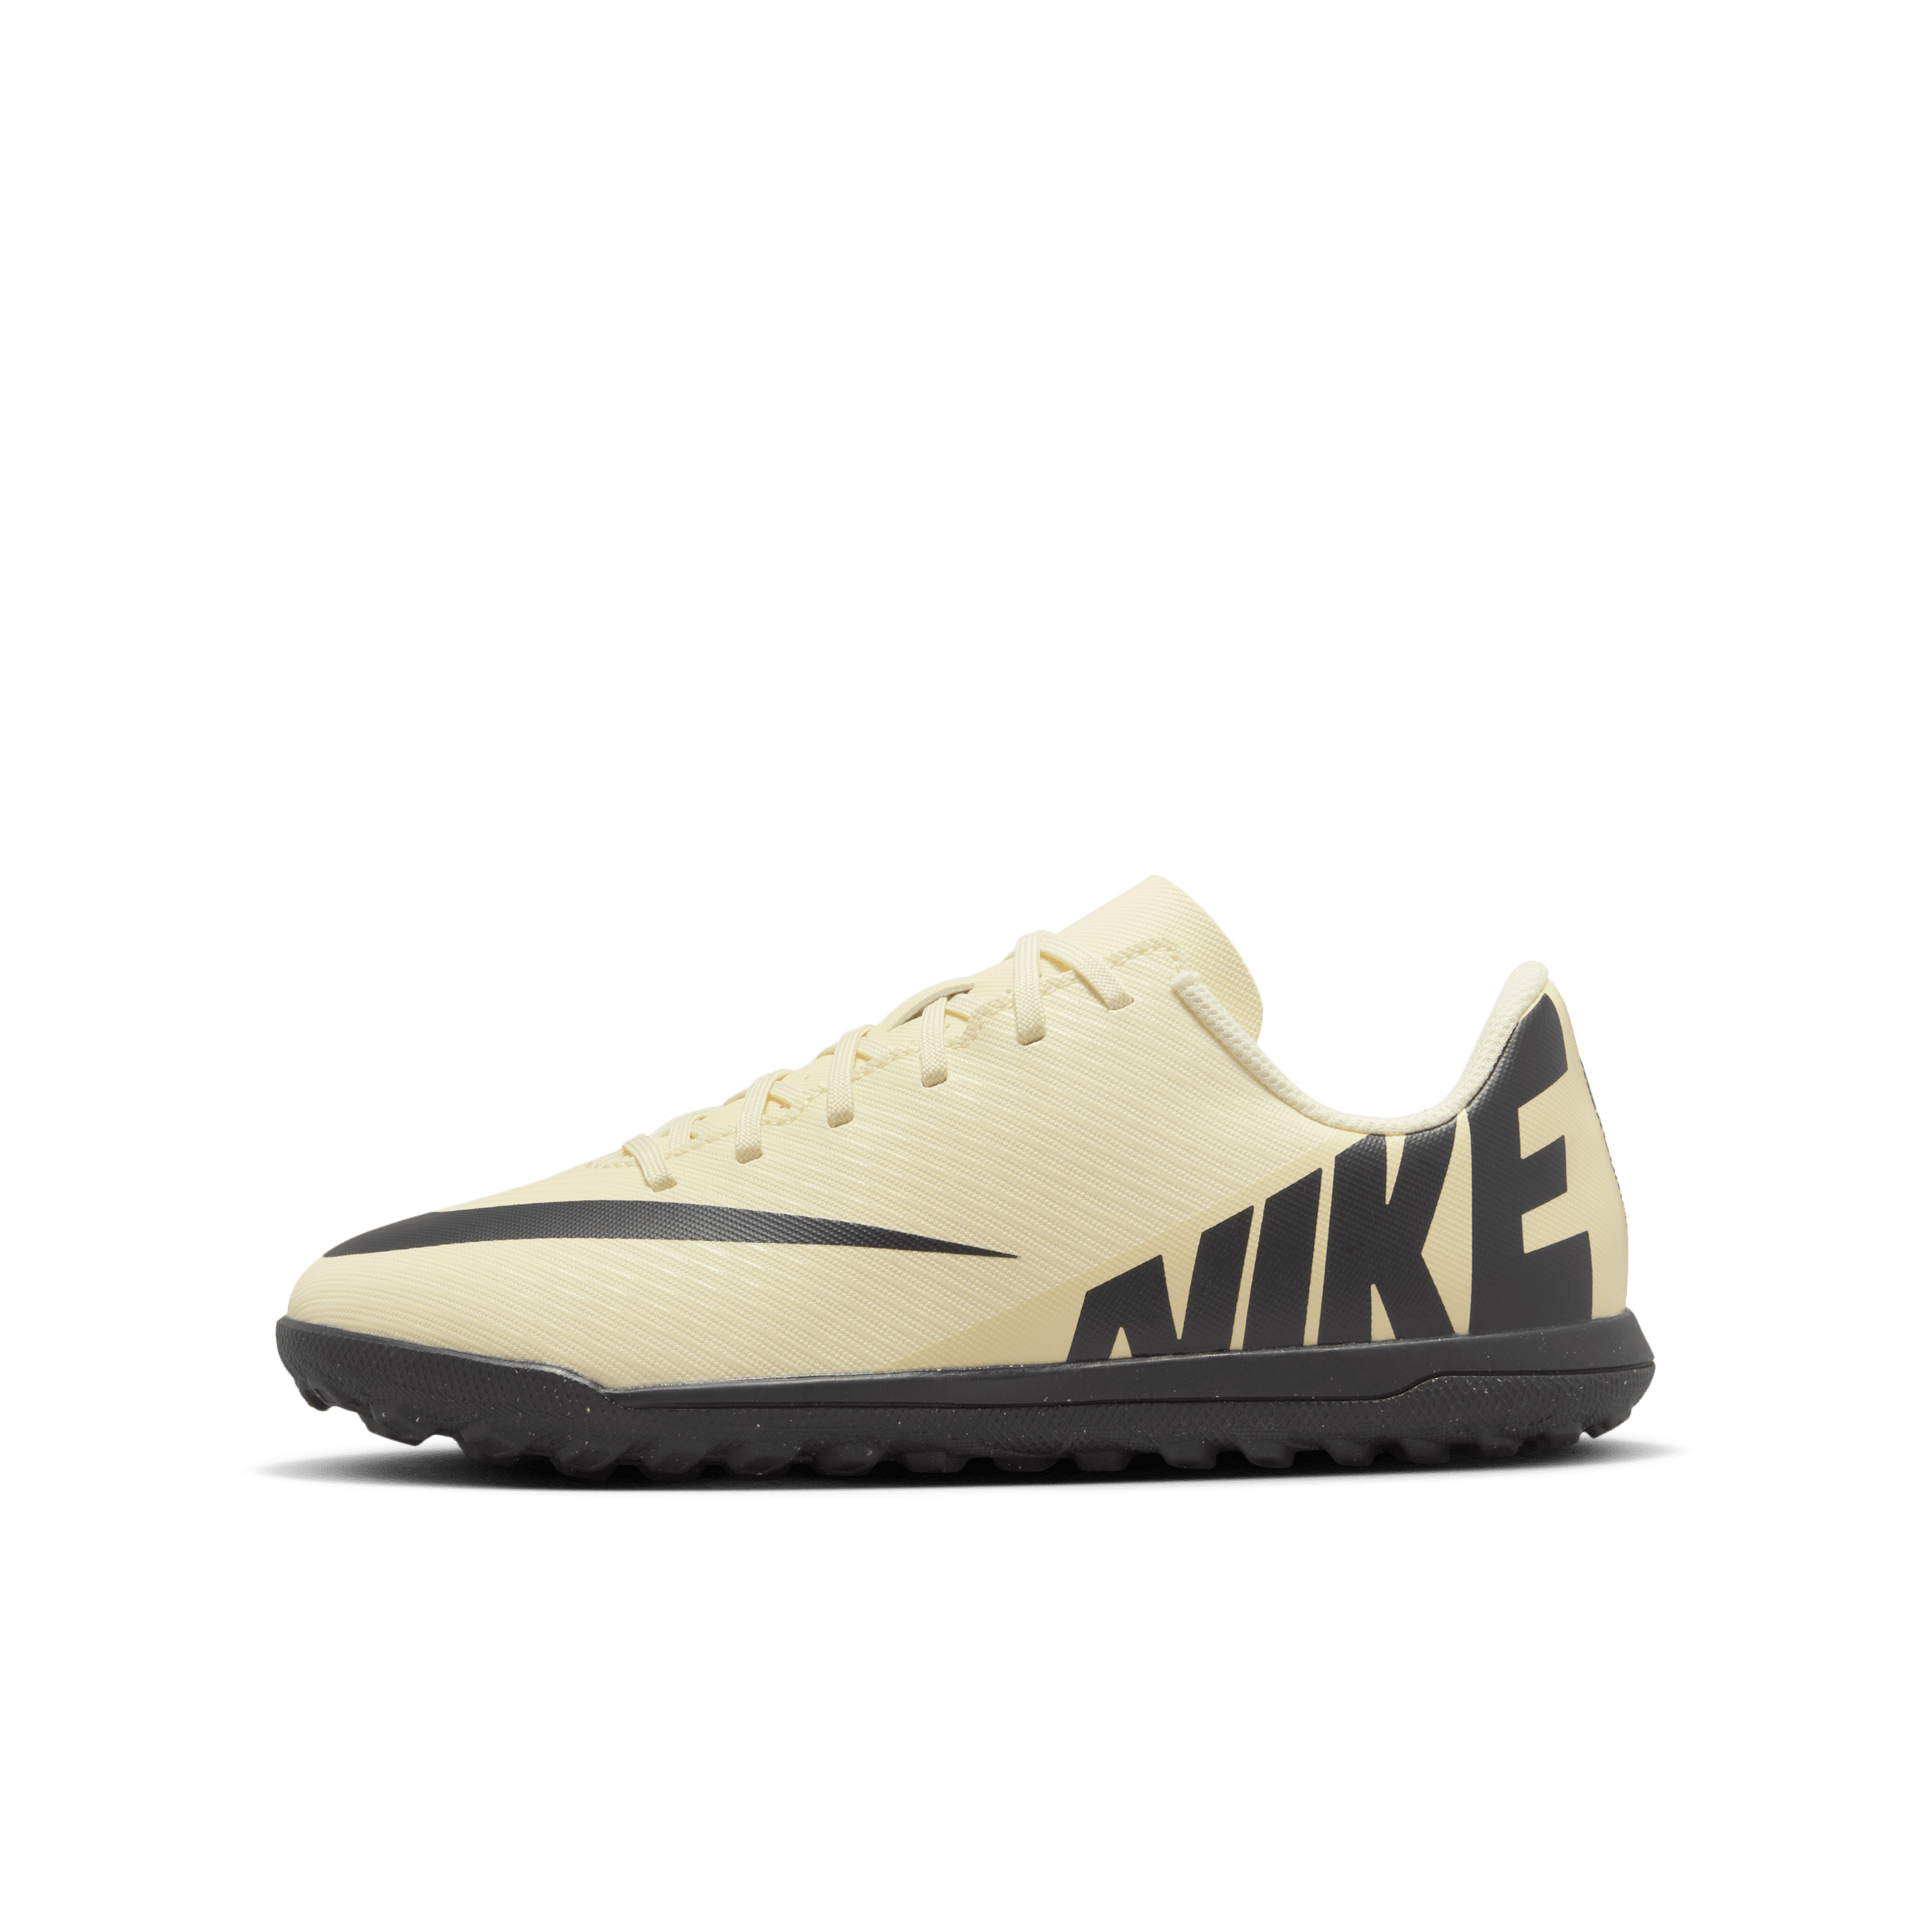 Scarpa da calcio a taglio basso per erba sintetica Nike Jr. Mercurial Vapor 15 Club – Bambini/Ragazzi - Giallo